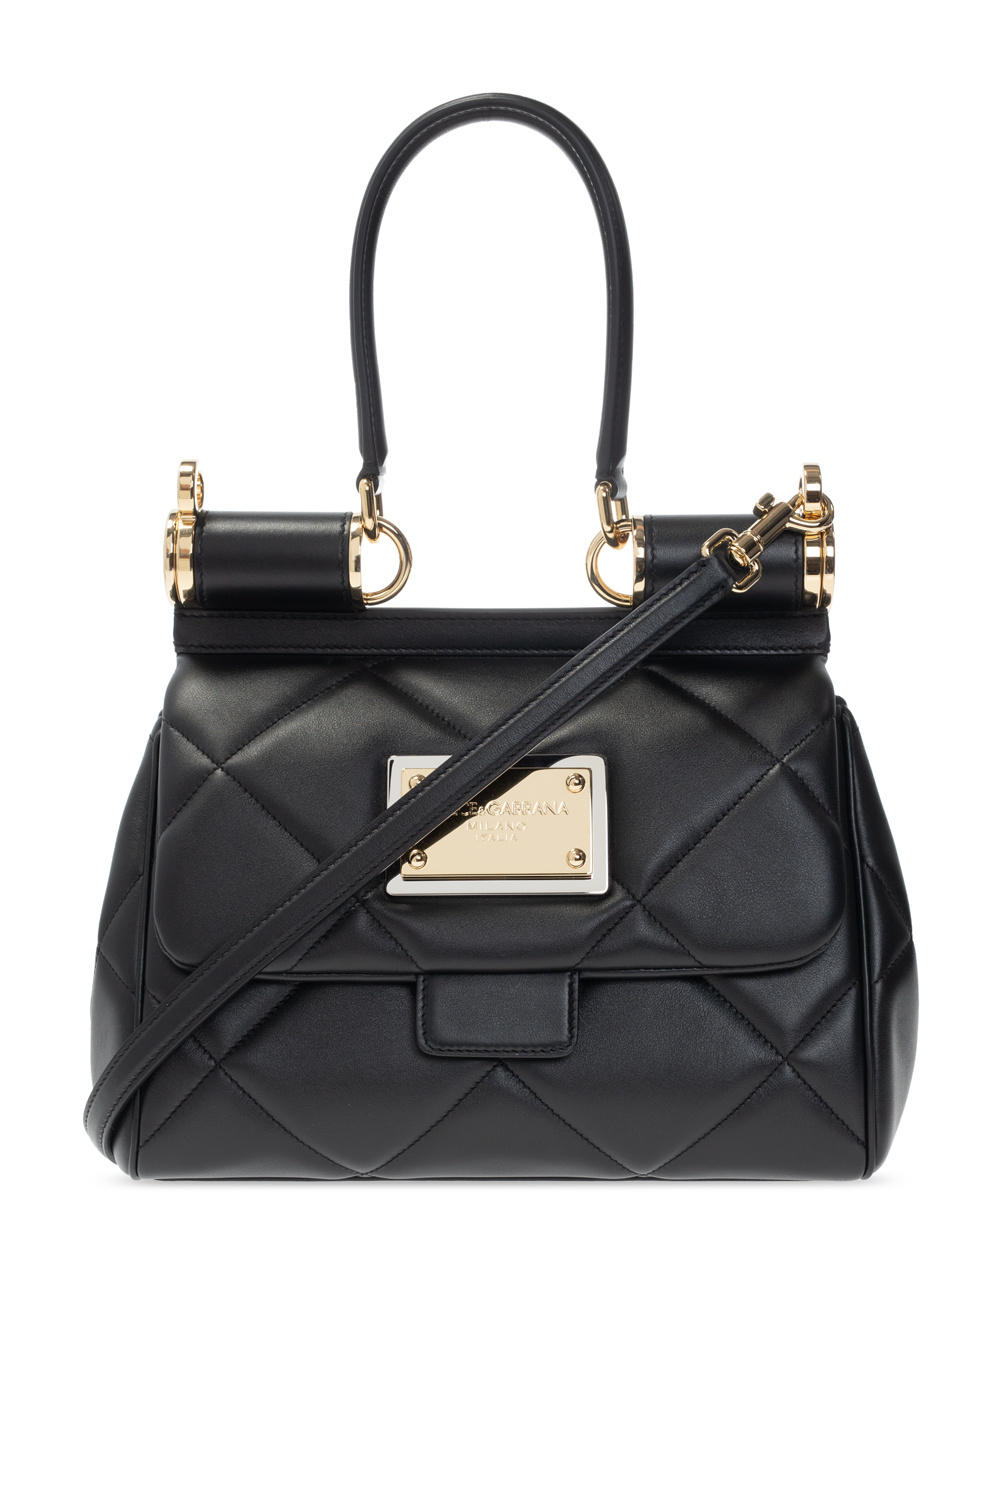 Dolce & Gabbana Sicily Patent Leather Shoulder Bag